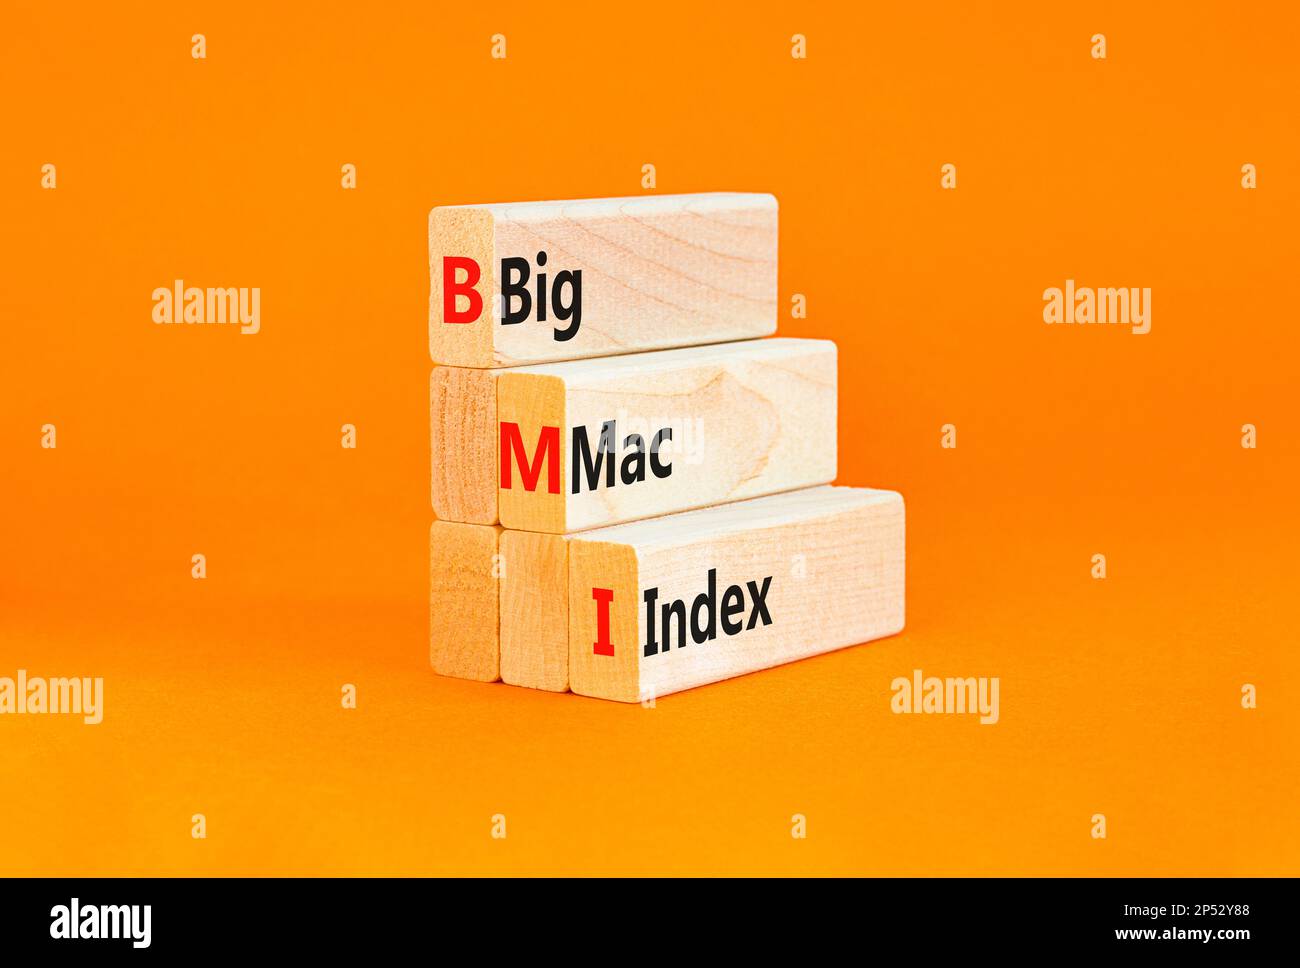 Símbolo de índice BIG mac de BMI. Palabras del concepto Índice grande del  mac de BMI en bloques de madera sobre un fondo naranja de la tabla hermosa.  Negocios y BMI big